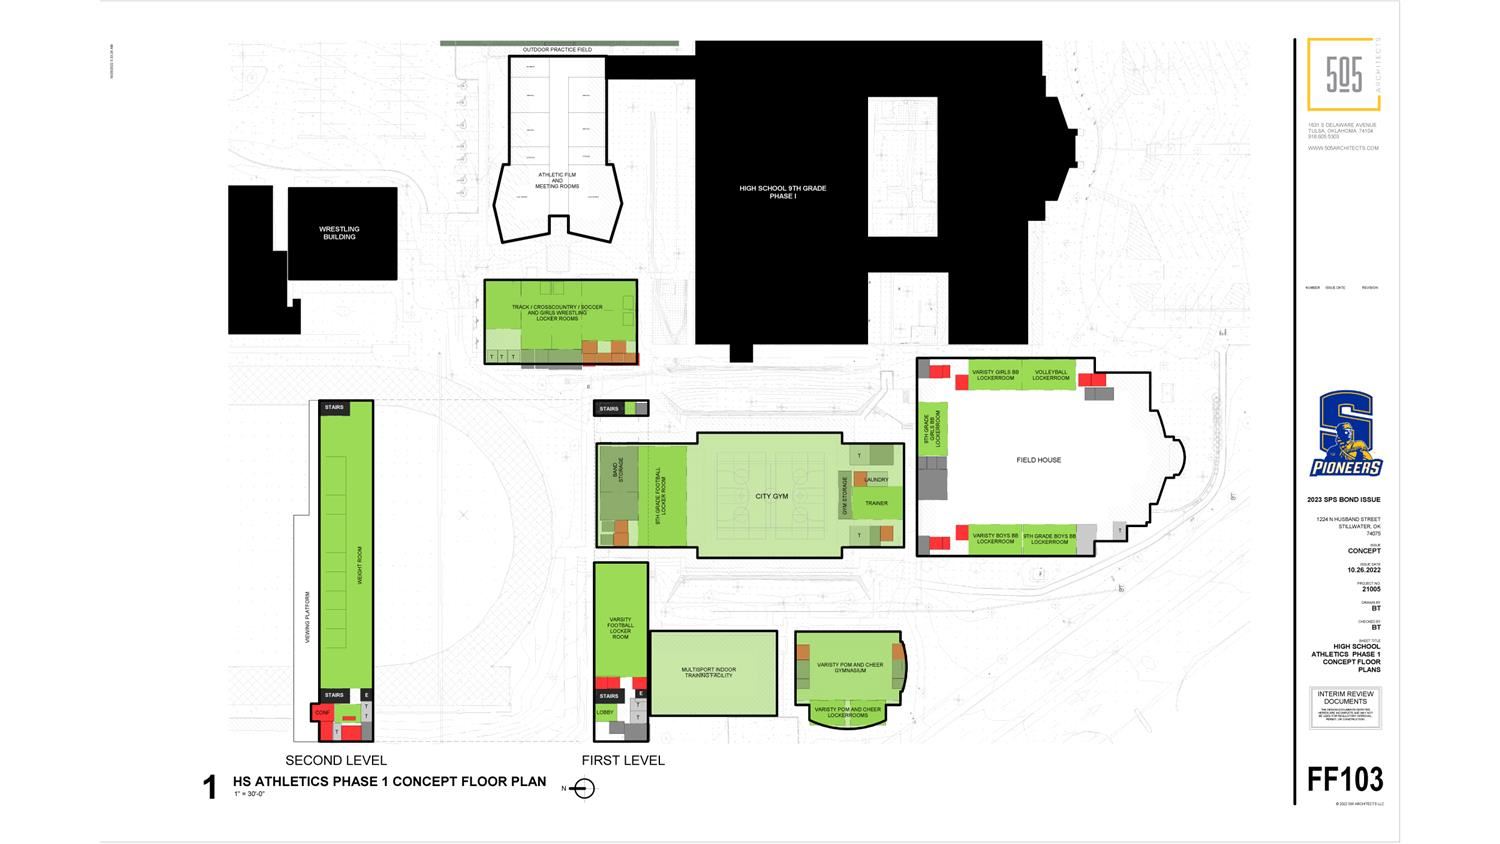 SHS Athletics Concept Floor Plan